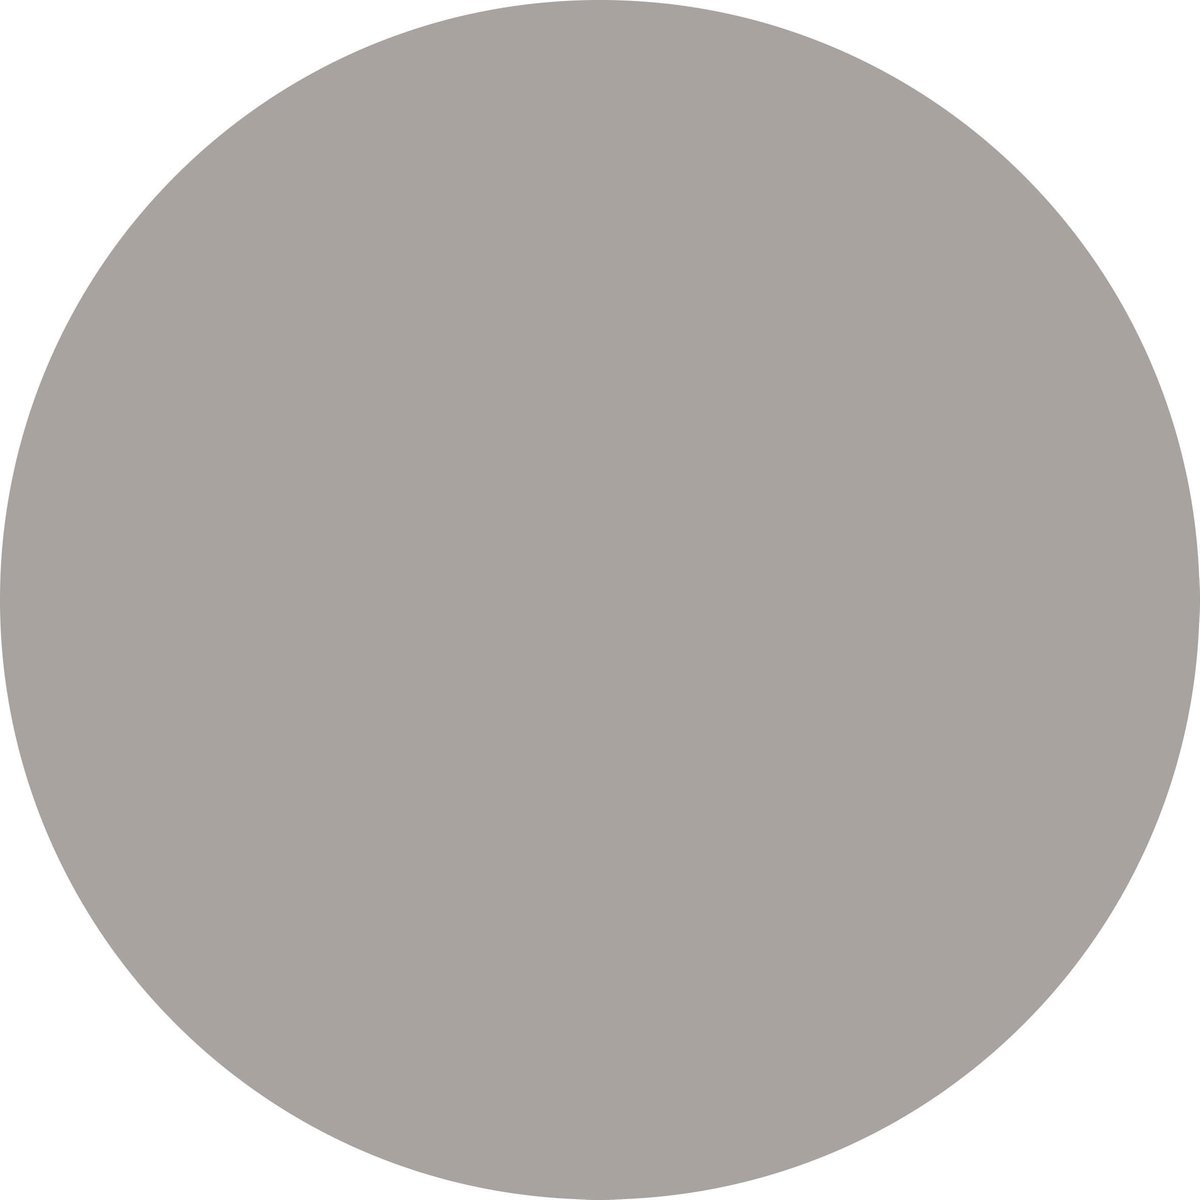 L'Oréal Paris Colorista Hair Makeup – Grau – Verpackung beschädigt